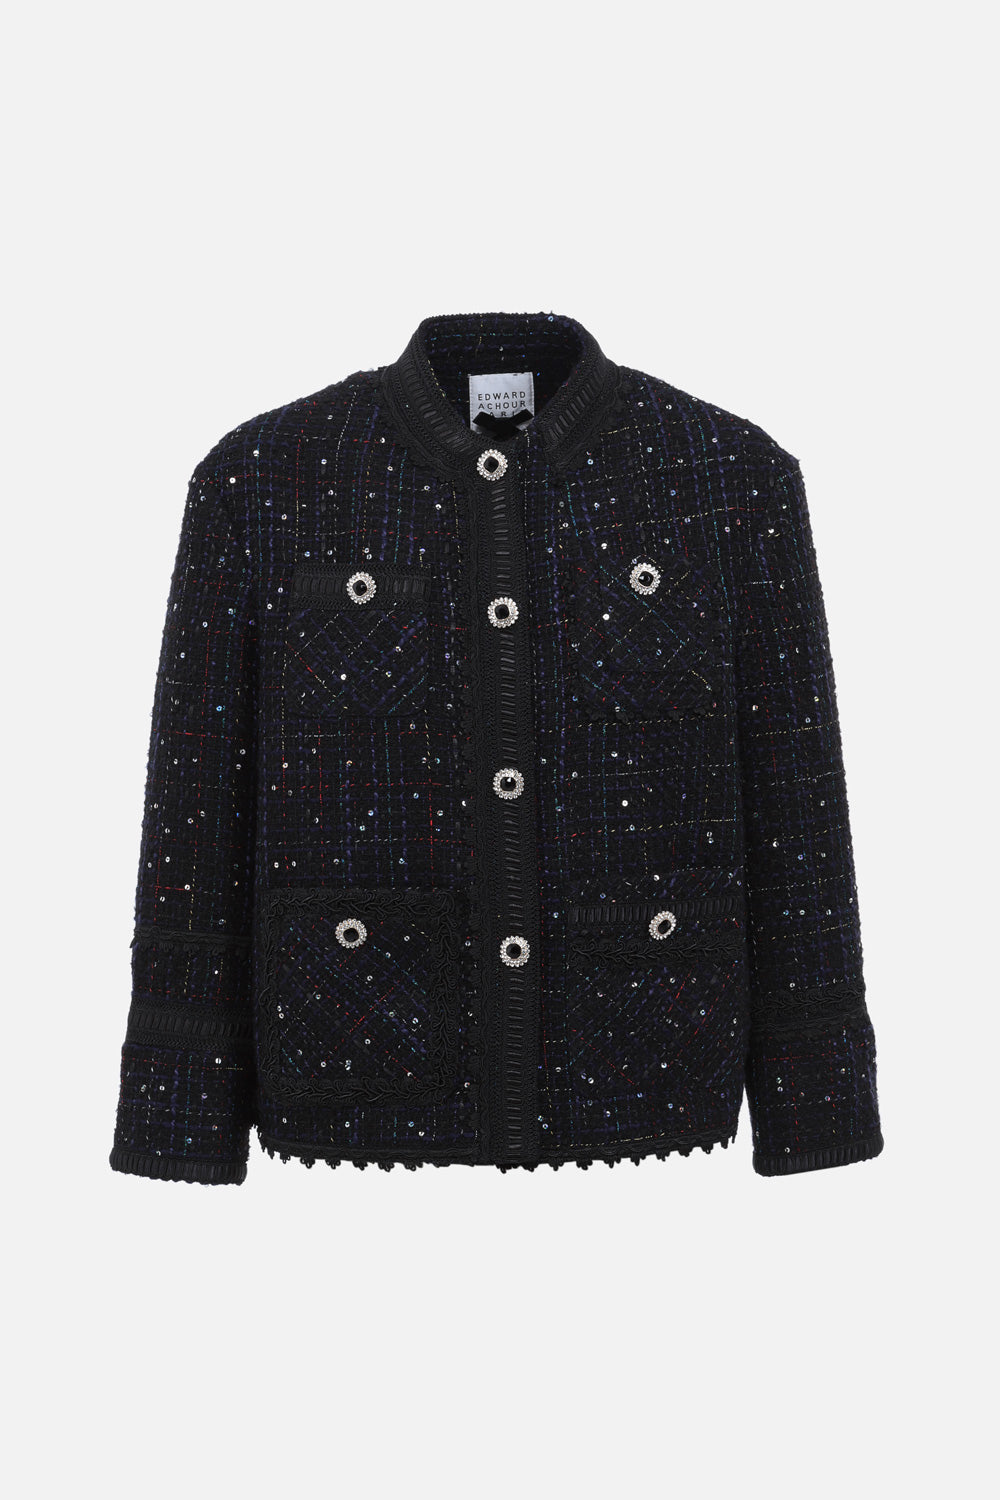 Black speckled tweed jacket